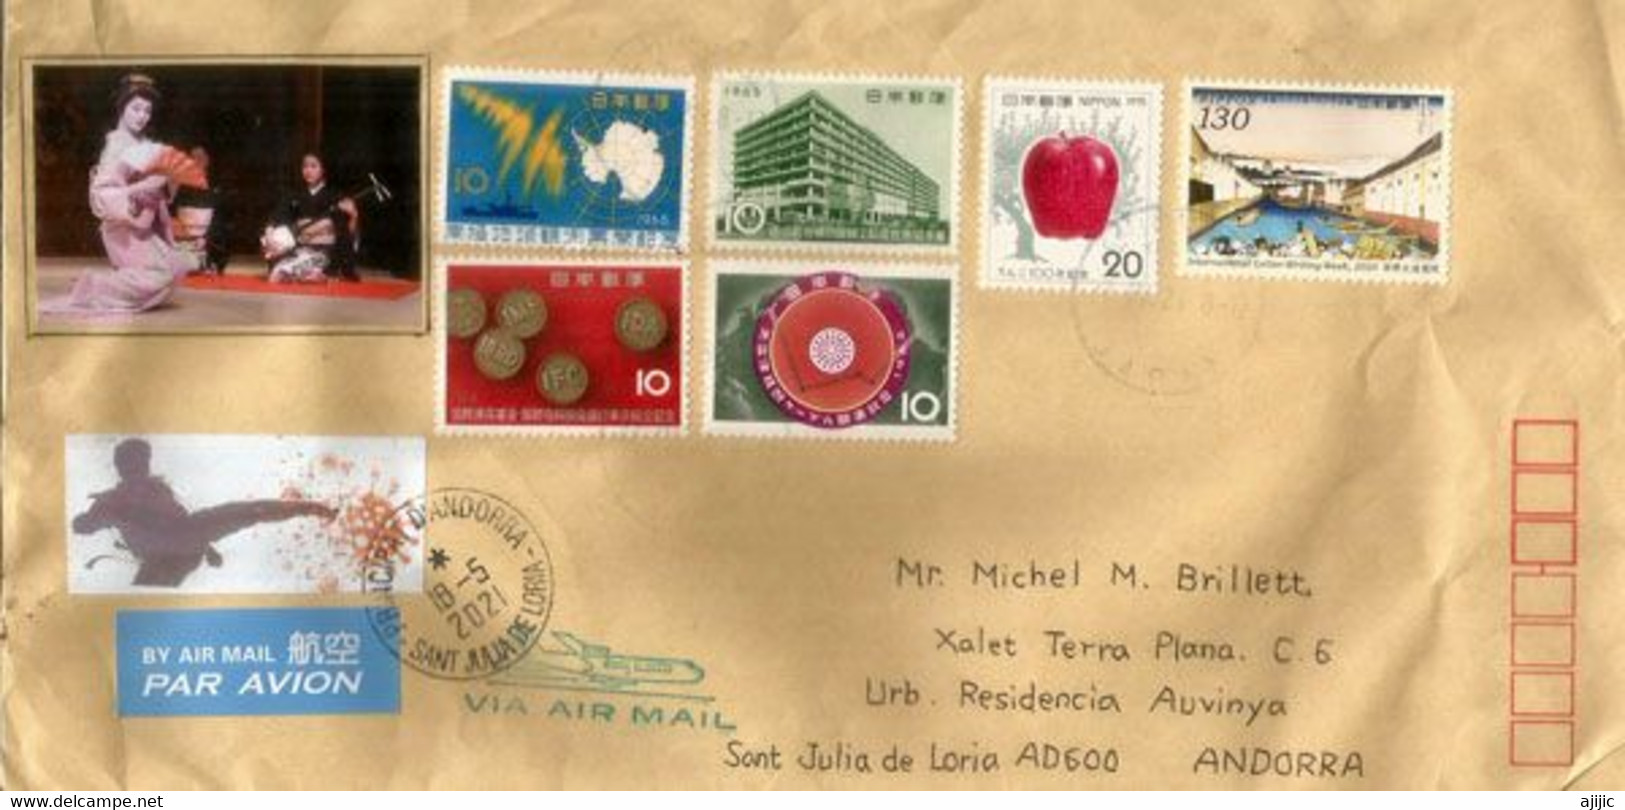 Lettre De Tokyo,Japon,adressée Andorra,avec Vignette Prevention Coronavirus Japon Et Arrivée Timbre à Date Andorra - Lettres & Documents